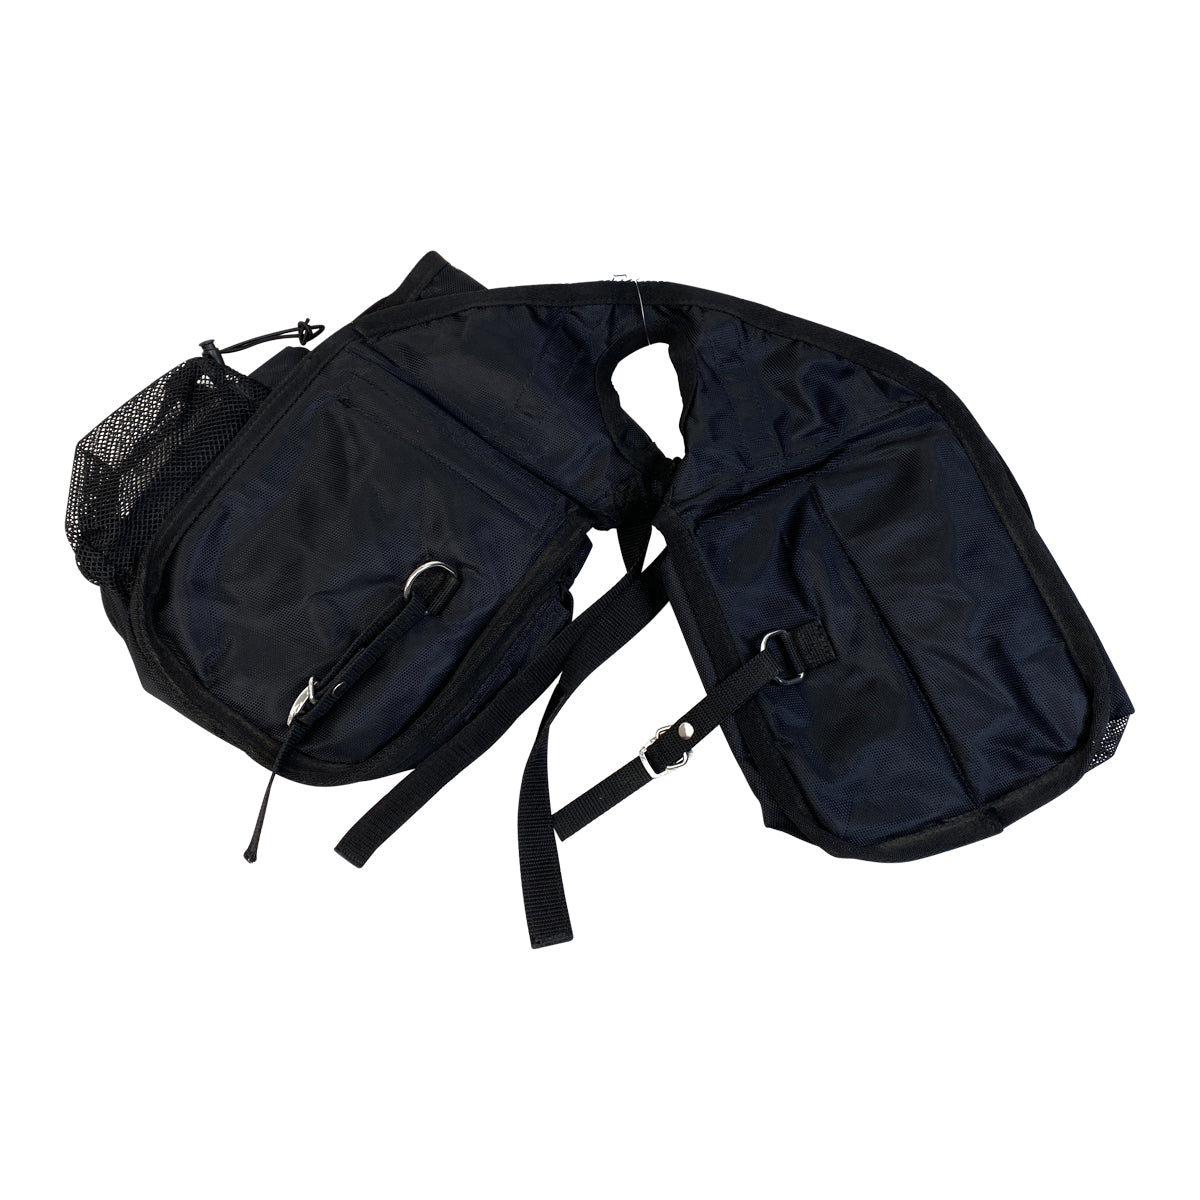 Cashel Horn Saddle Bag in Black 